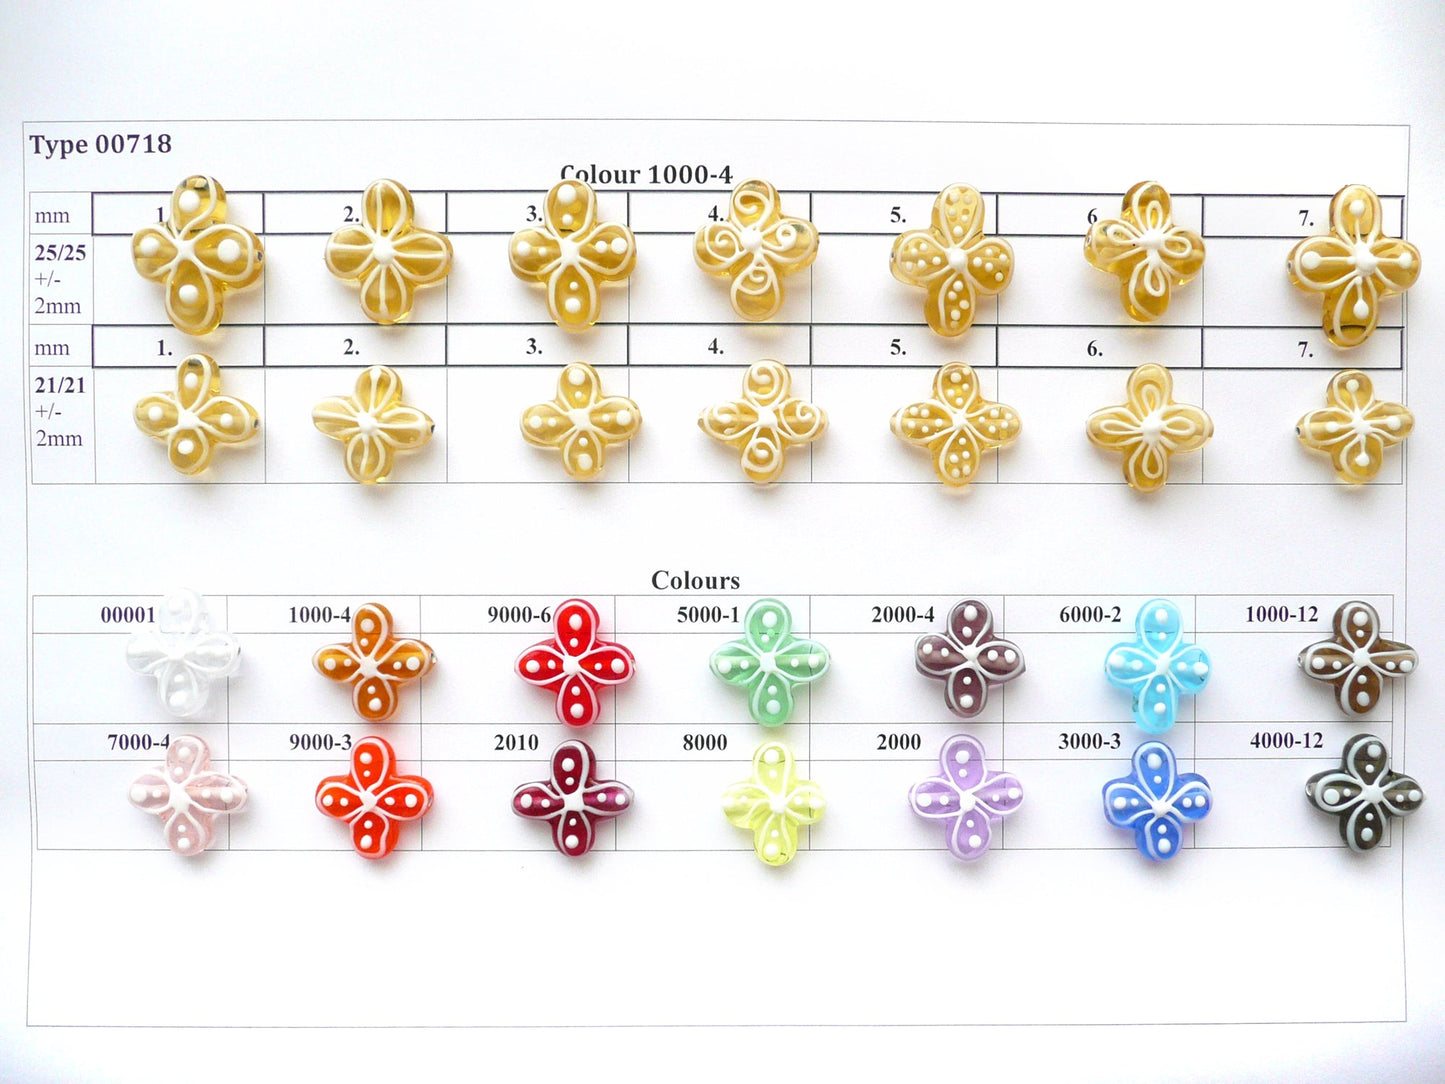 30 pcs Flower Lampwork Beads 718 / Design 4, Handmade, Preciosa Glass, Czech Republic